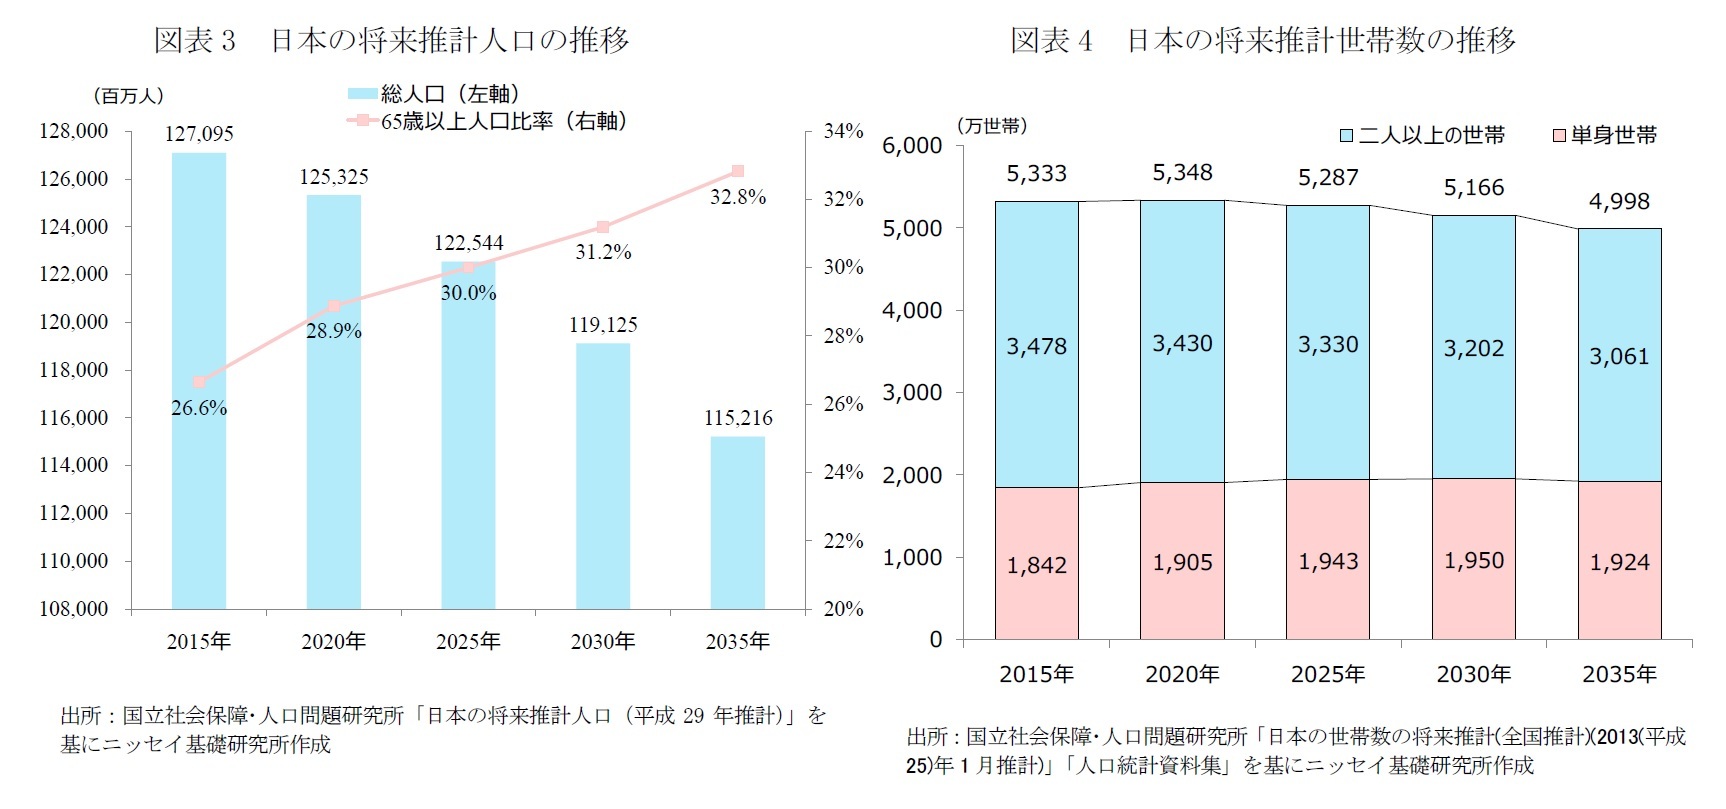 図表3　日本の将来推計人口の推移/図表4　日本の将来推計世帯数の推移